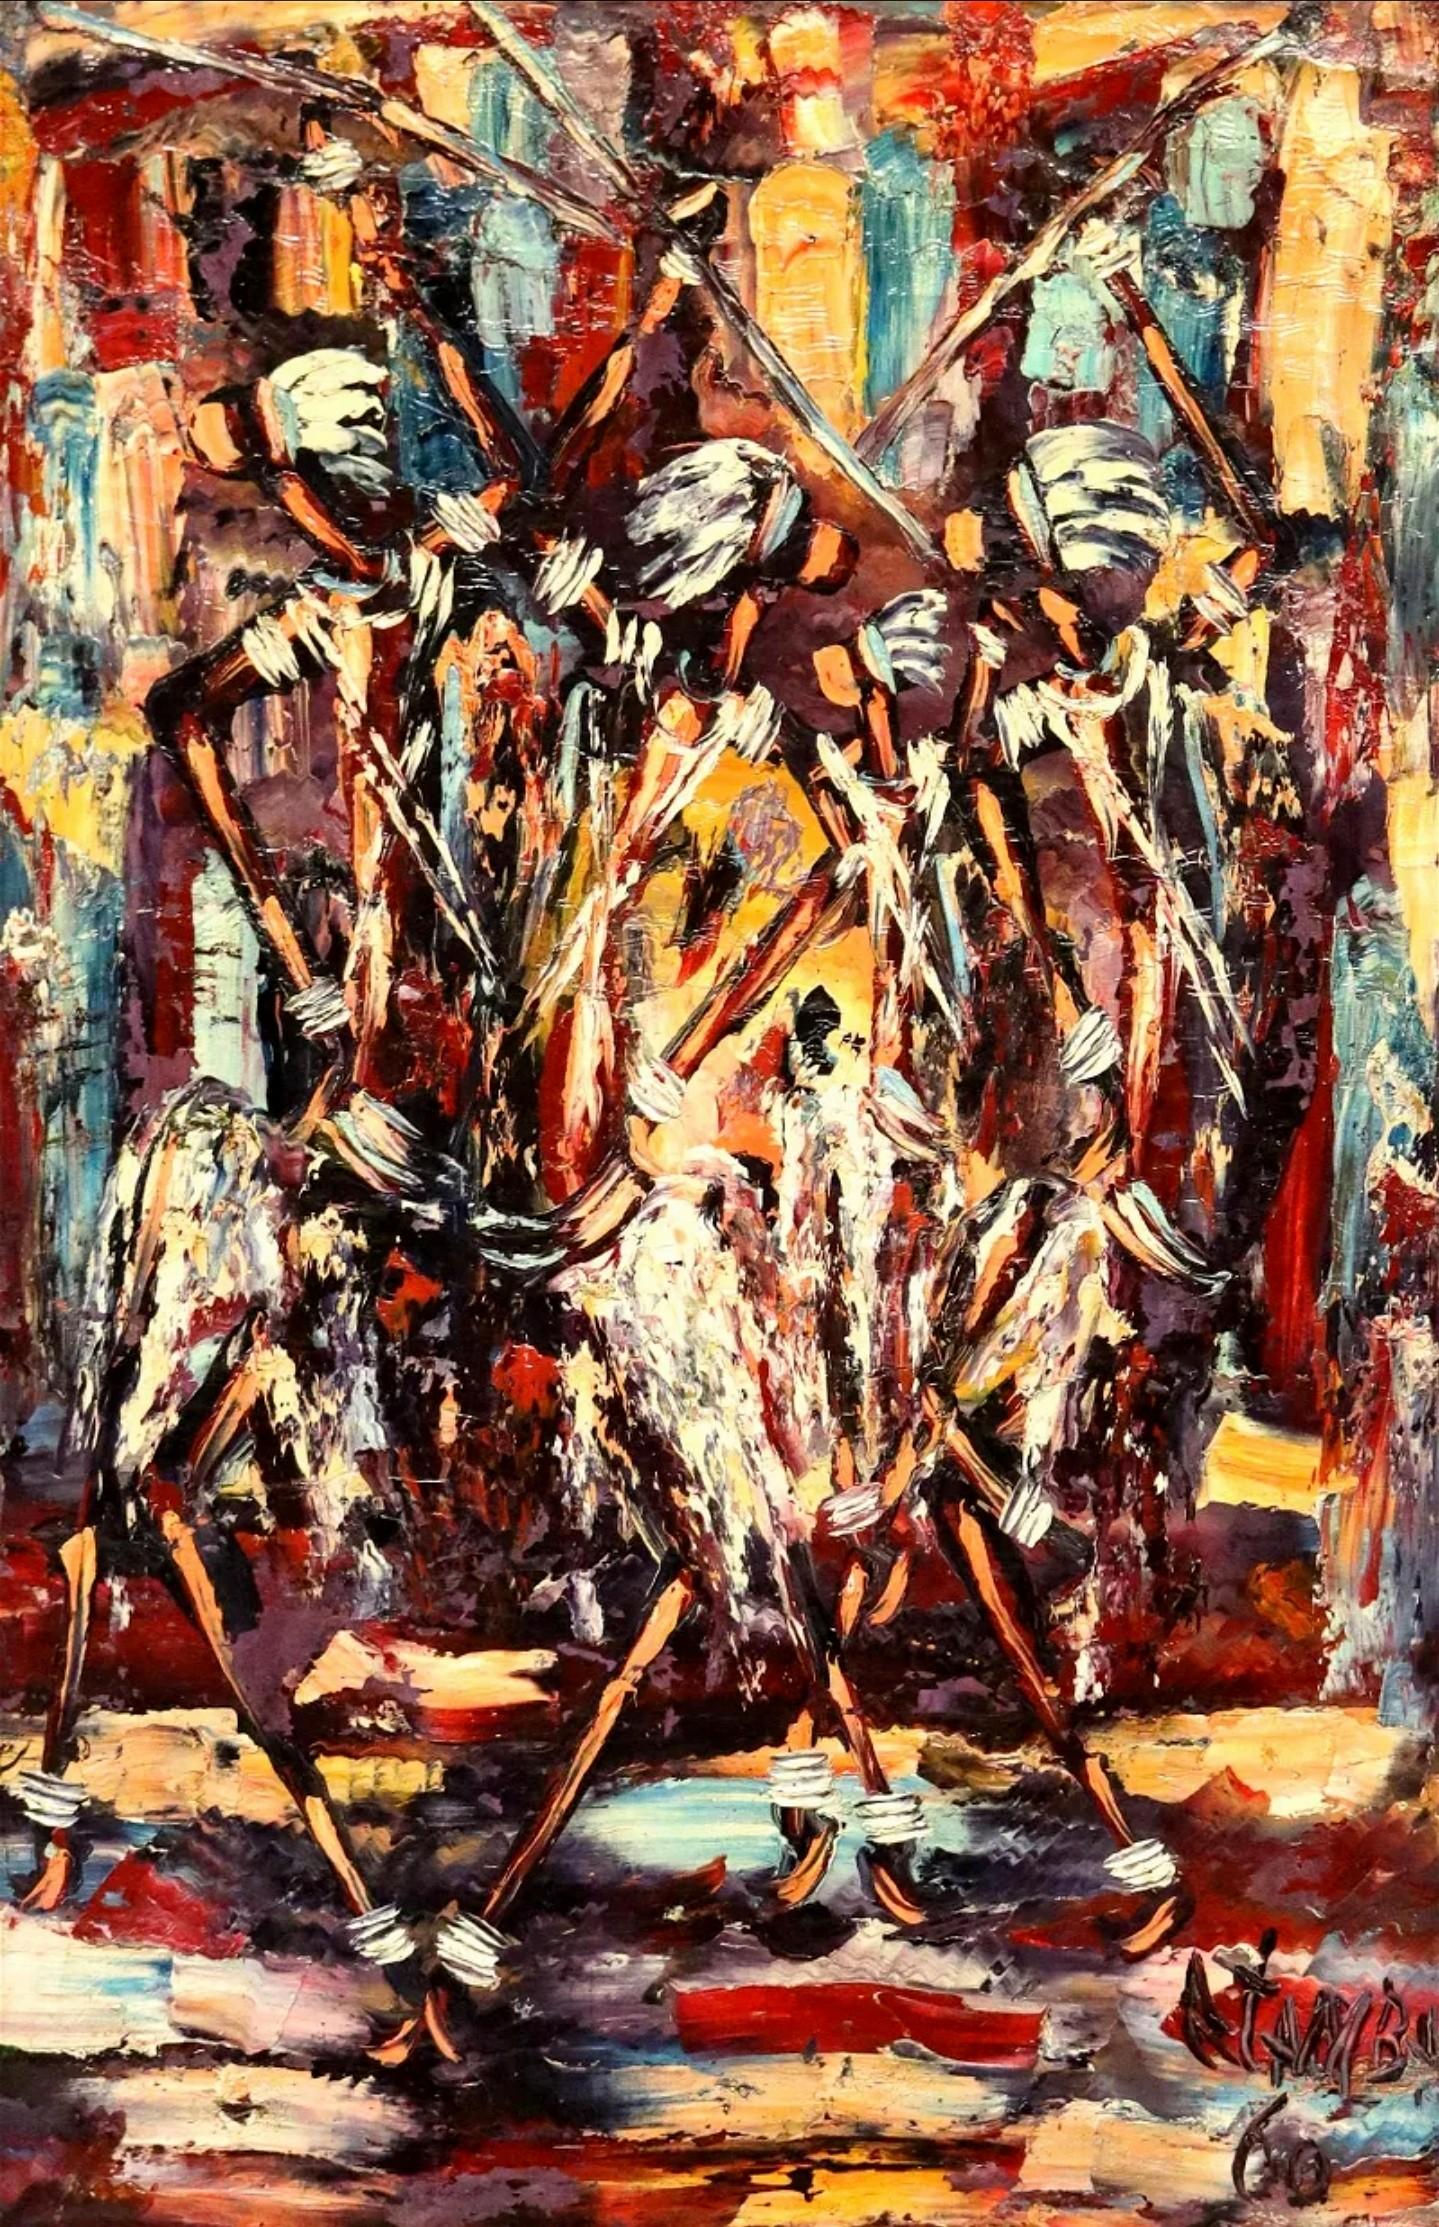 Ein gerahmtes originales afrikanisches Ölgemälde aus der Mitte des Jahrhunderts, Demokratische Republik Kongo, signiert unten rechts Atamb(?), (19)60, das abstrakte tanzende Figuren darstellt, in einem patinierten Rahmen aus vergoldetem Holz,